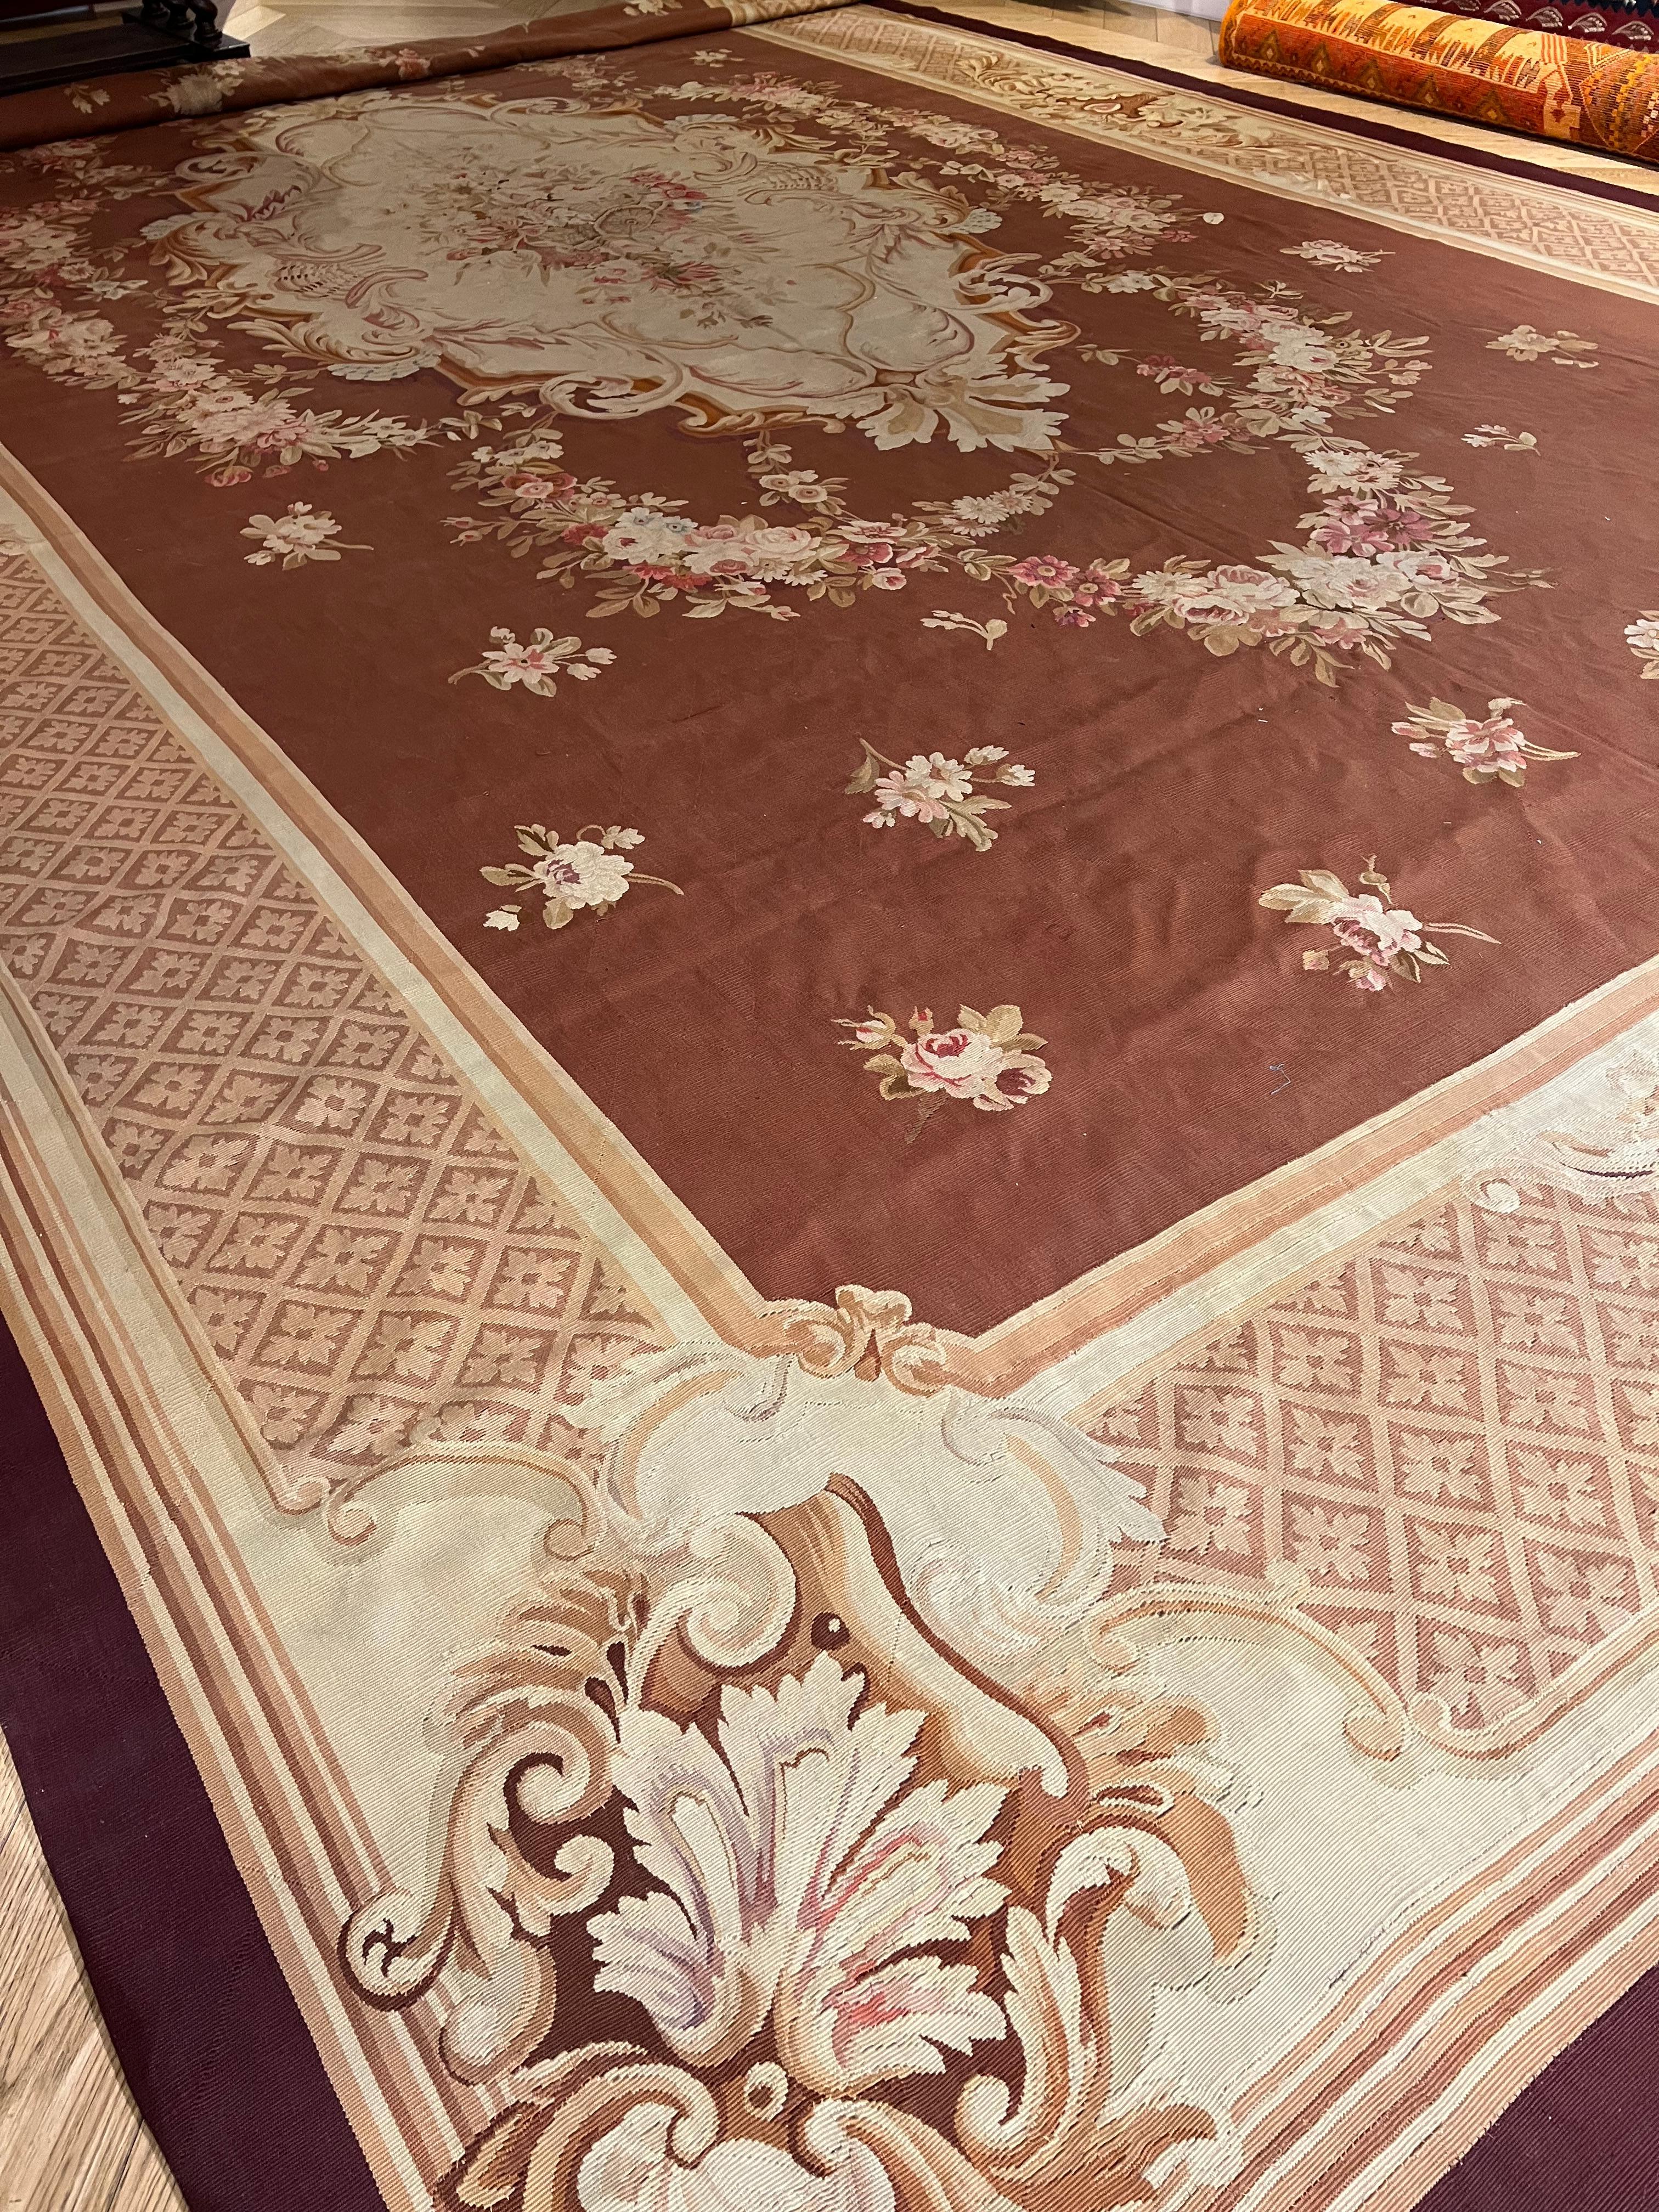 Die französische Manufaktur in Aubusson ist sowohl für die Herstellung von Wandteppichen als auch für das Weben schöner Bodenteppiche bekannt. Beide Textilien, die stets von hoher Qualität waren, sollten die prächtige Ausstattung der Villen und